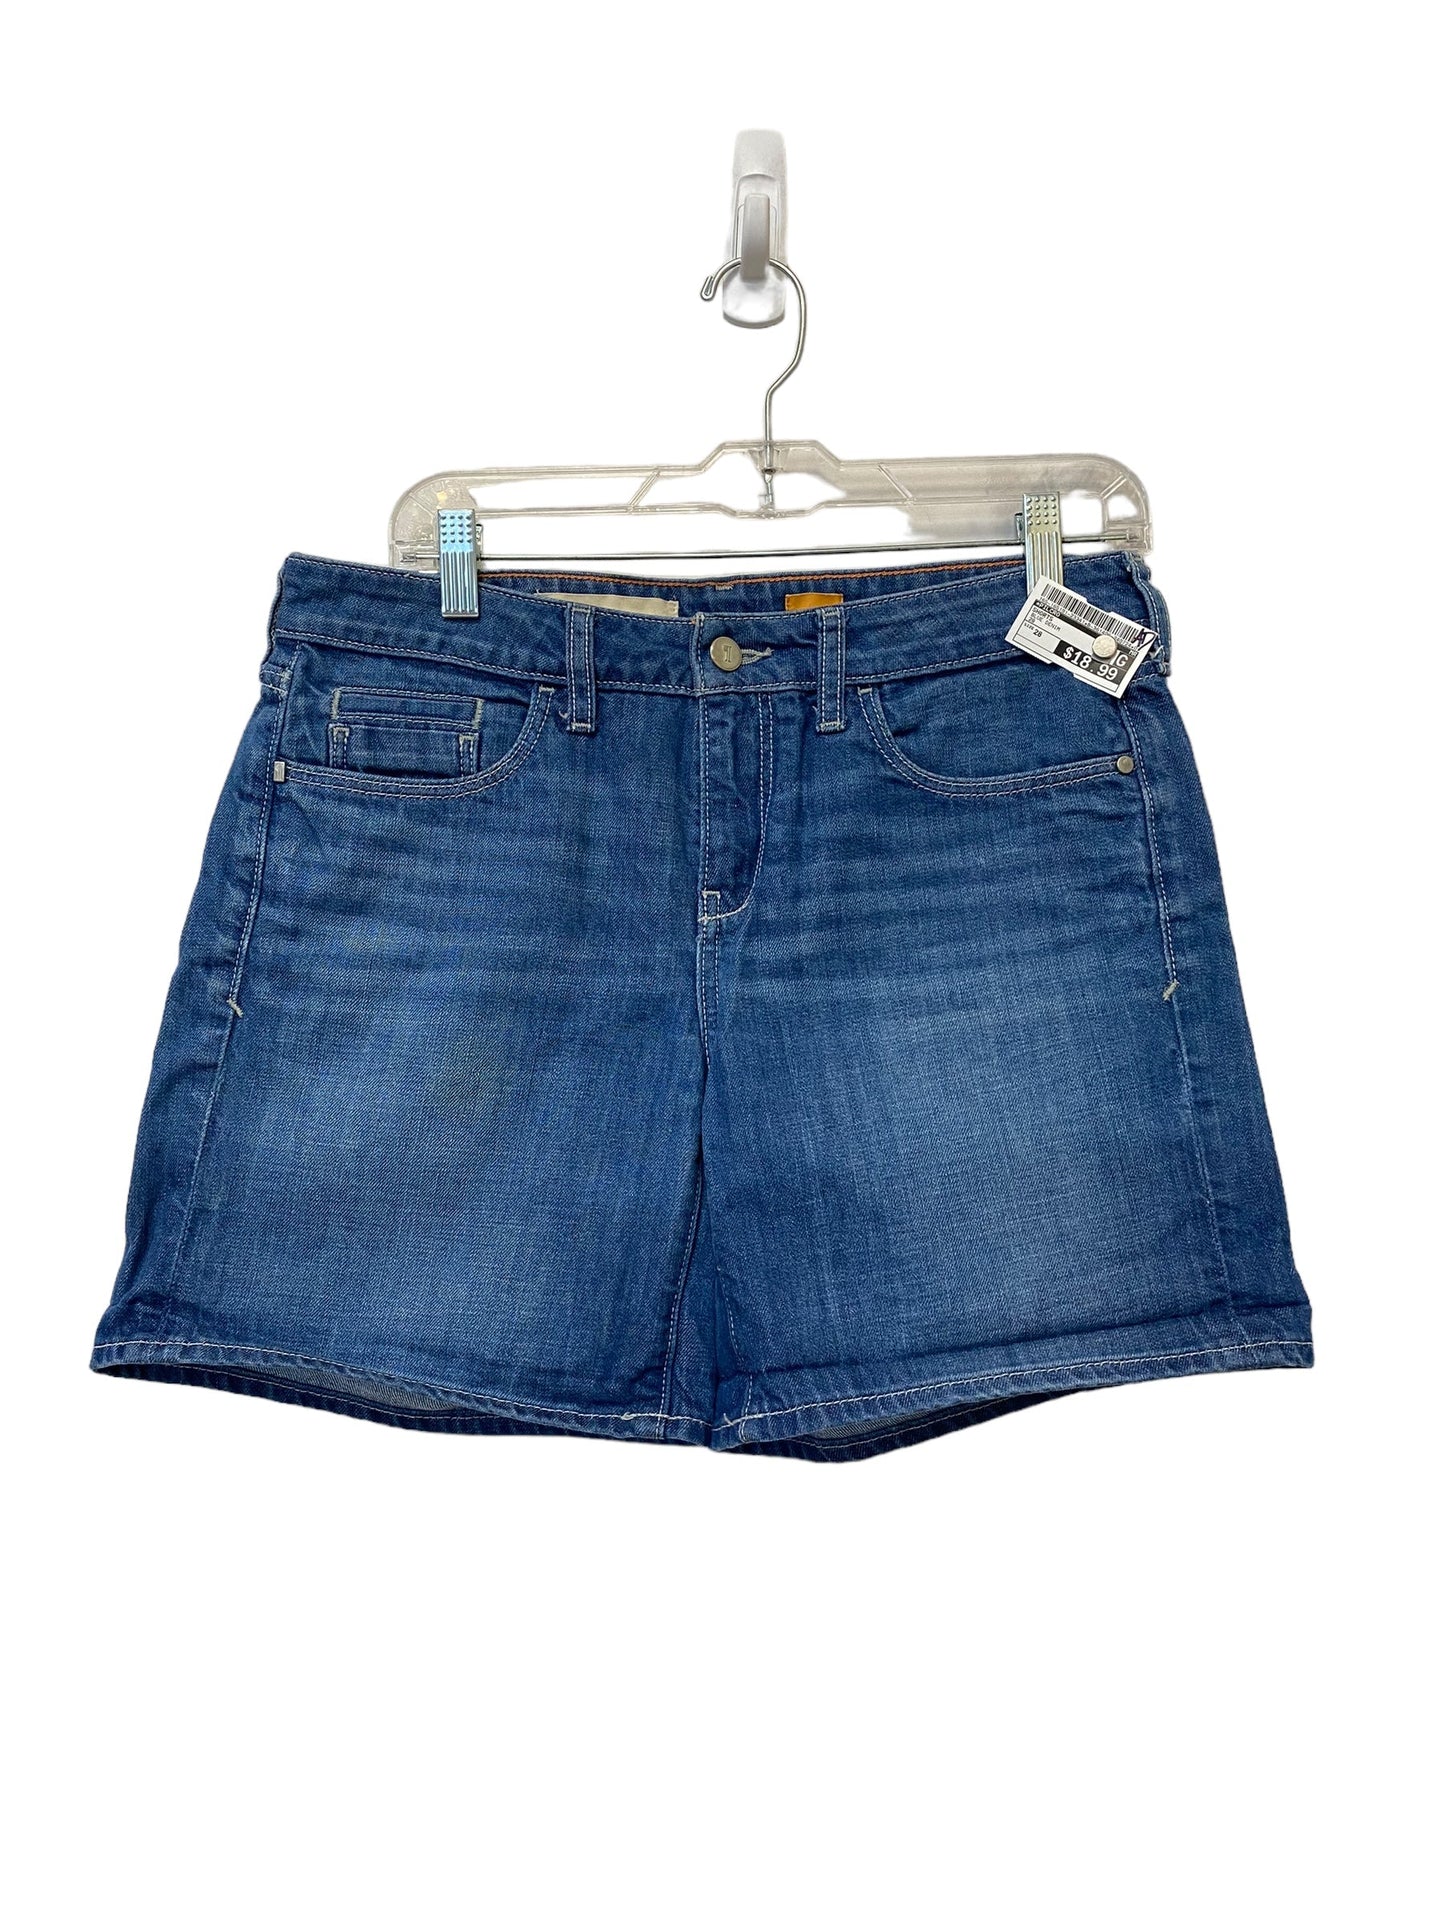 Blue Denim Shorts Pilcro, Size 28